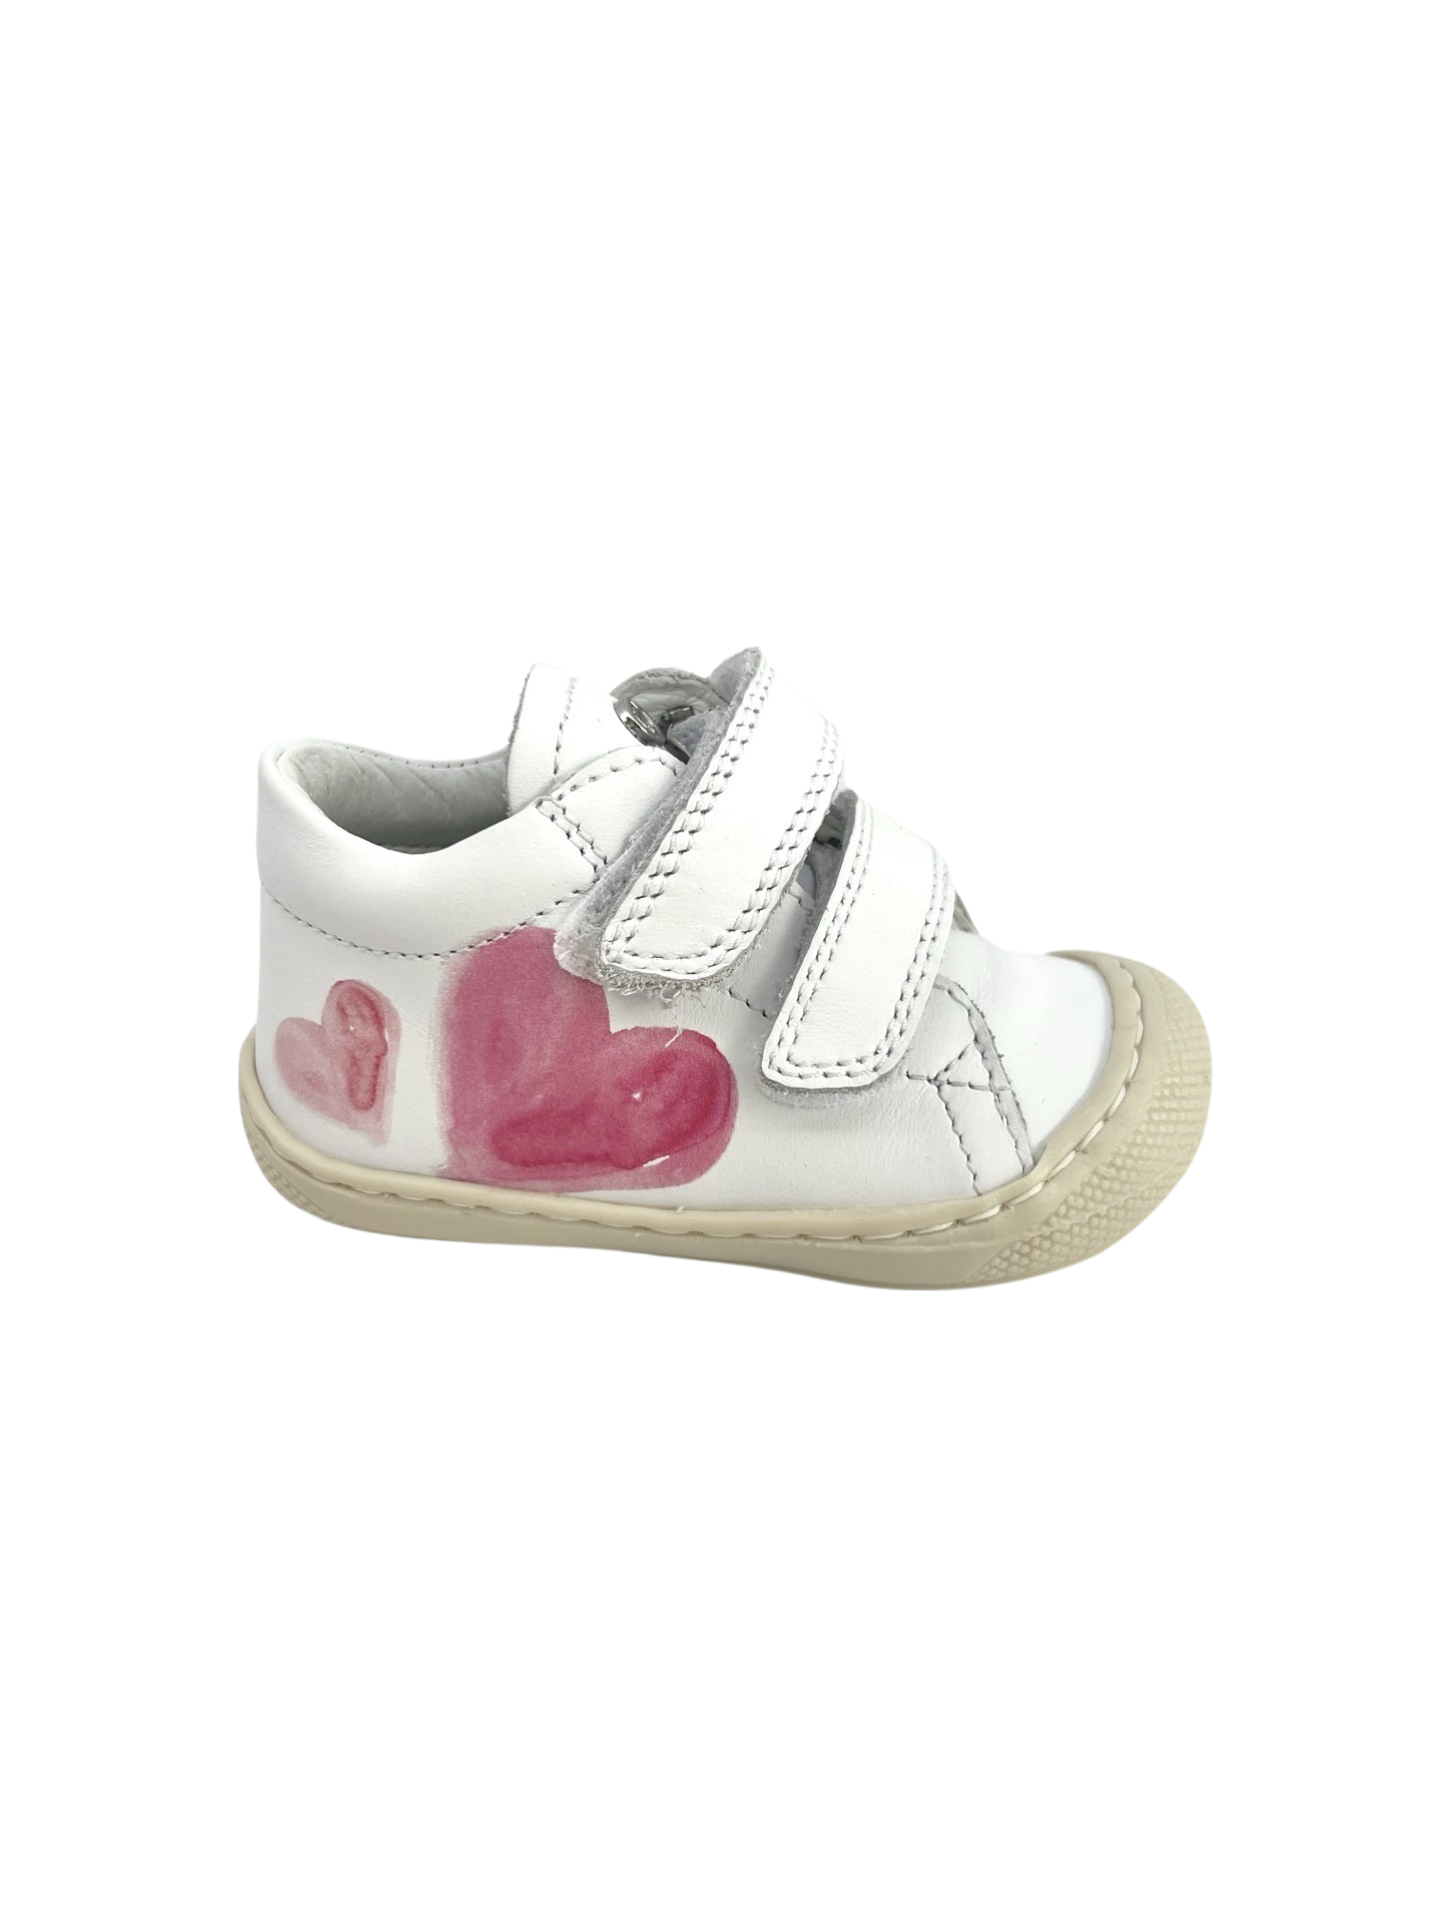 Naturino White Baby Sneaker with Heart Print - Piski